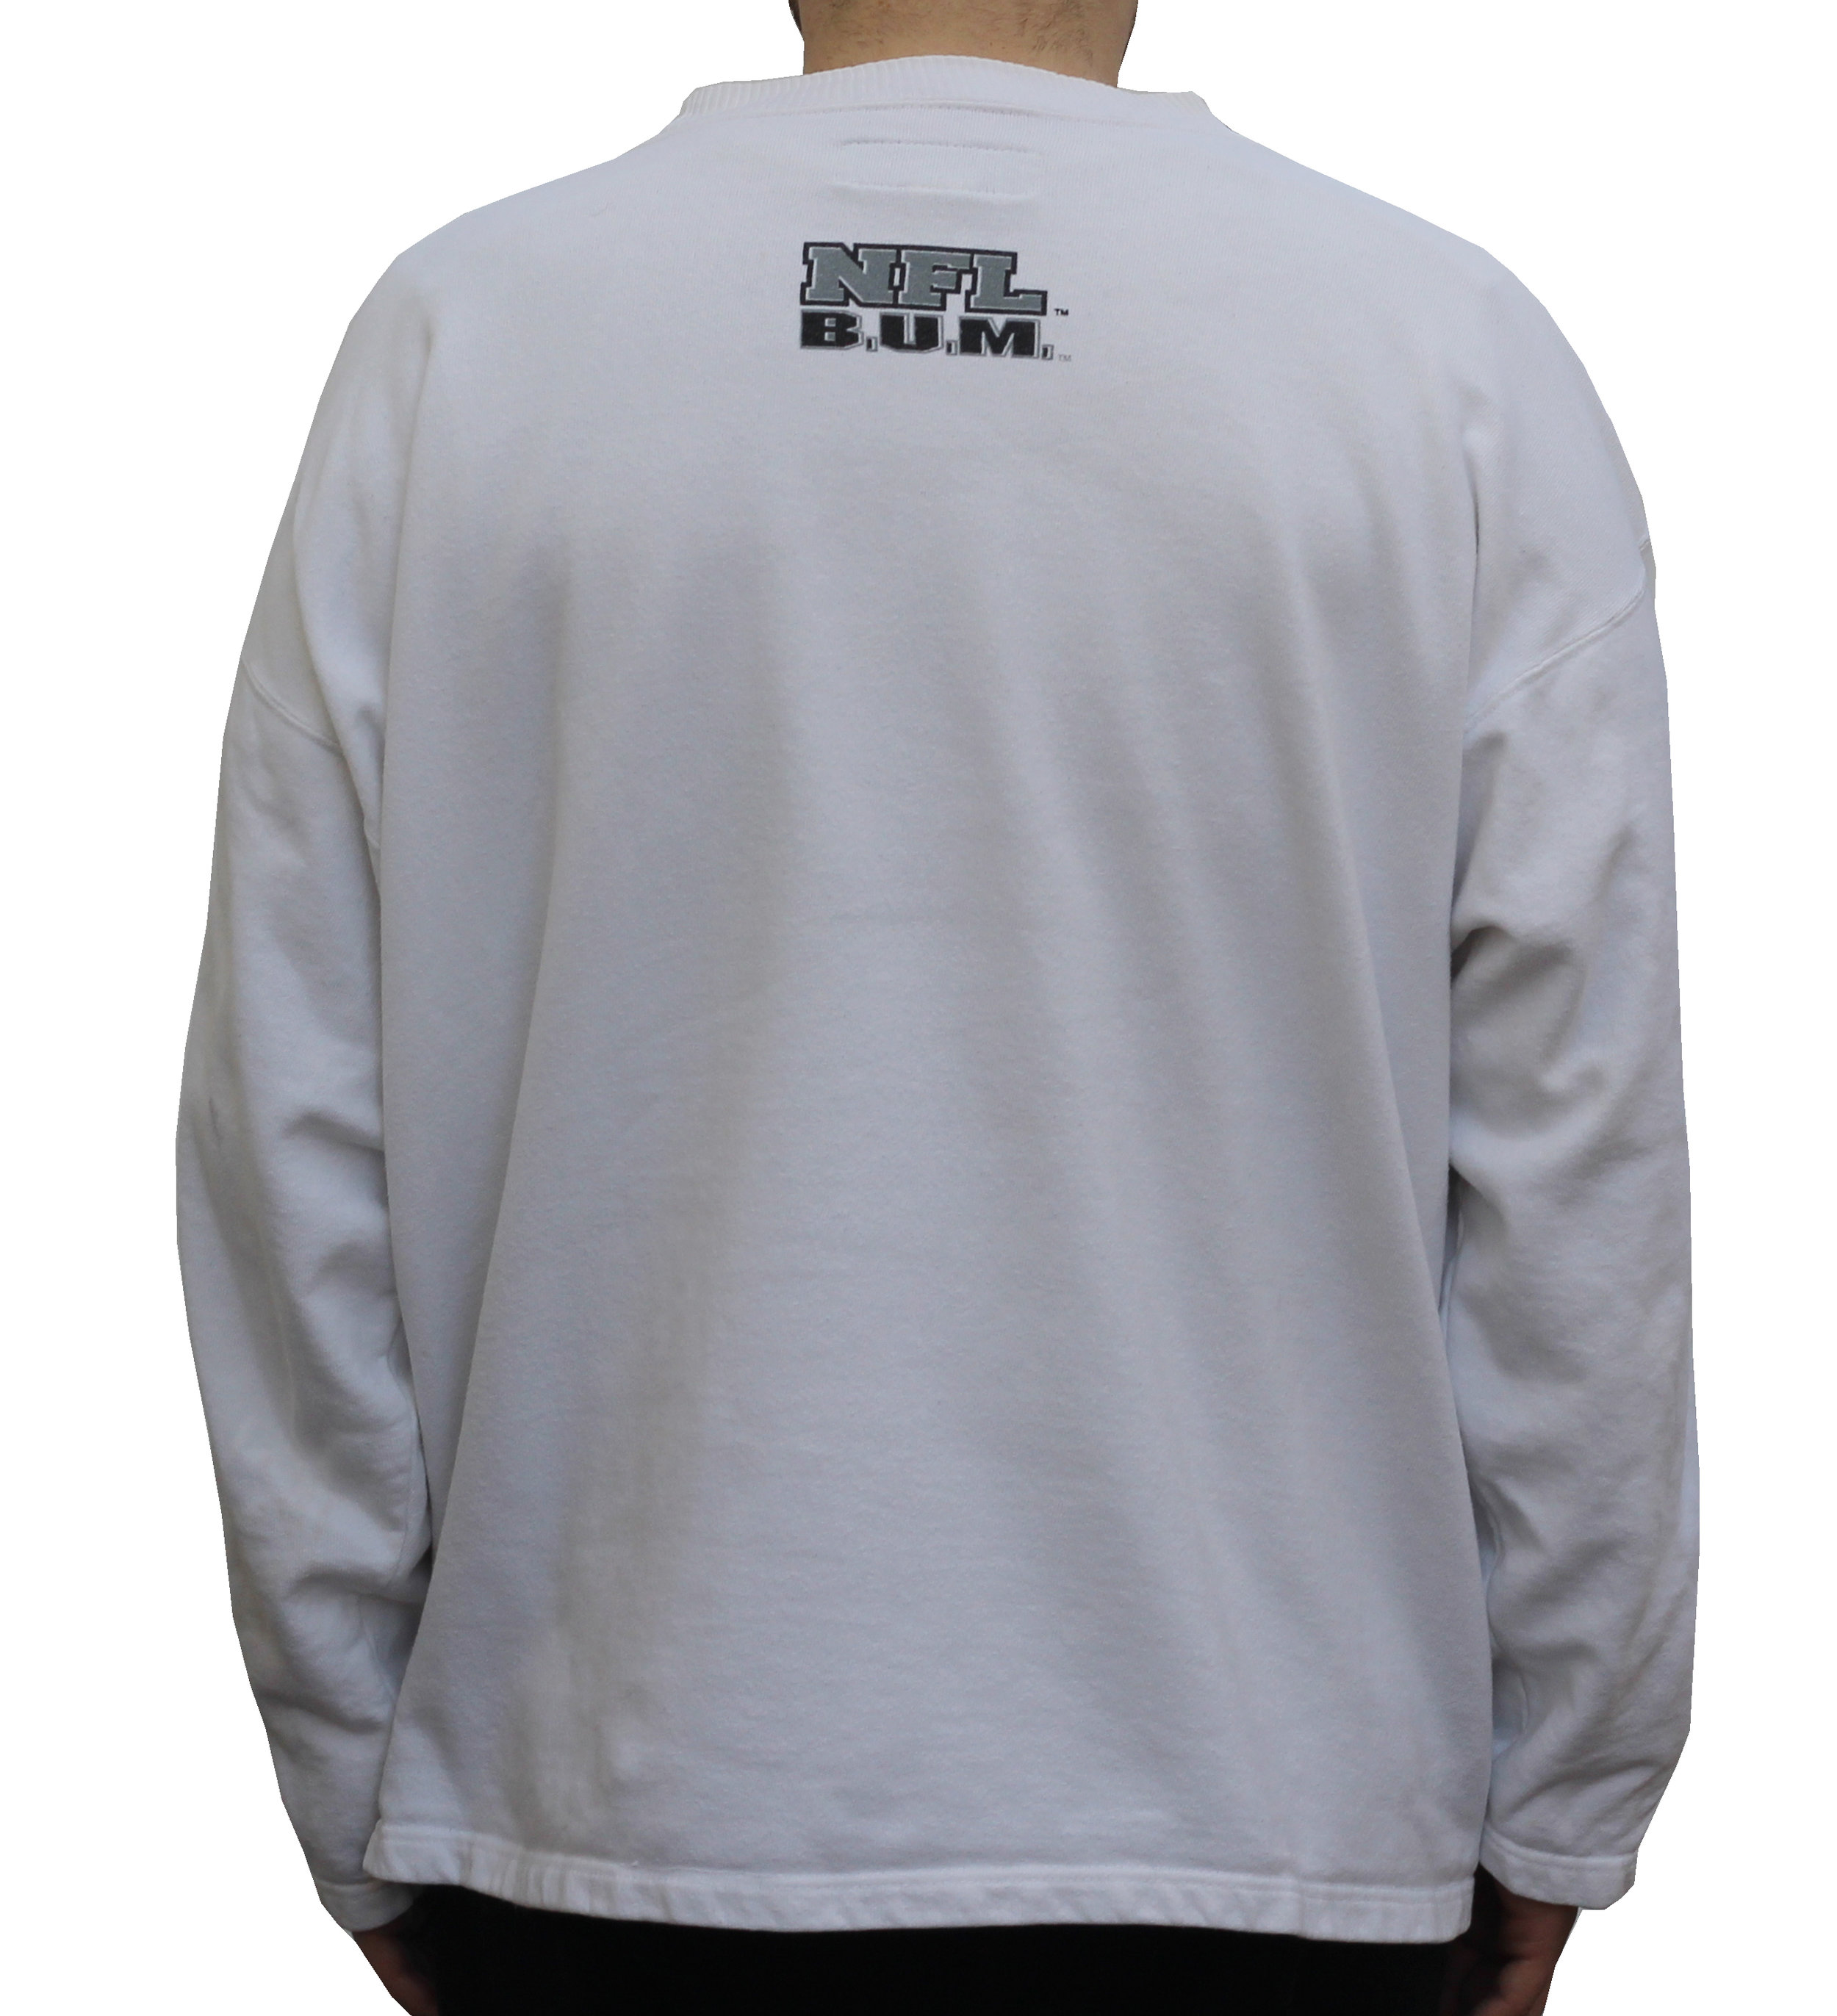 Vintage B.U.M. Equipment LA Raiders White Sweatshirt (Size XL) — Roots